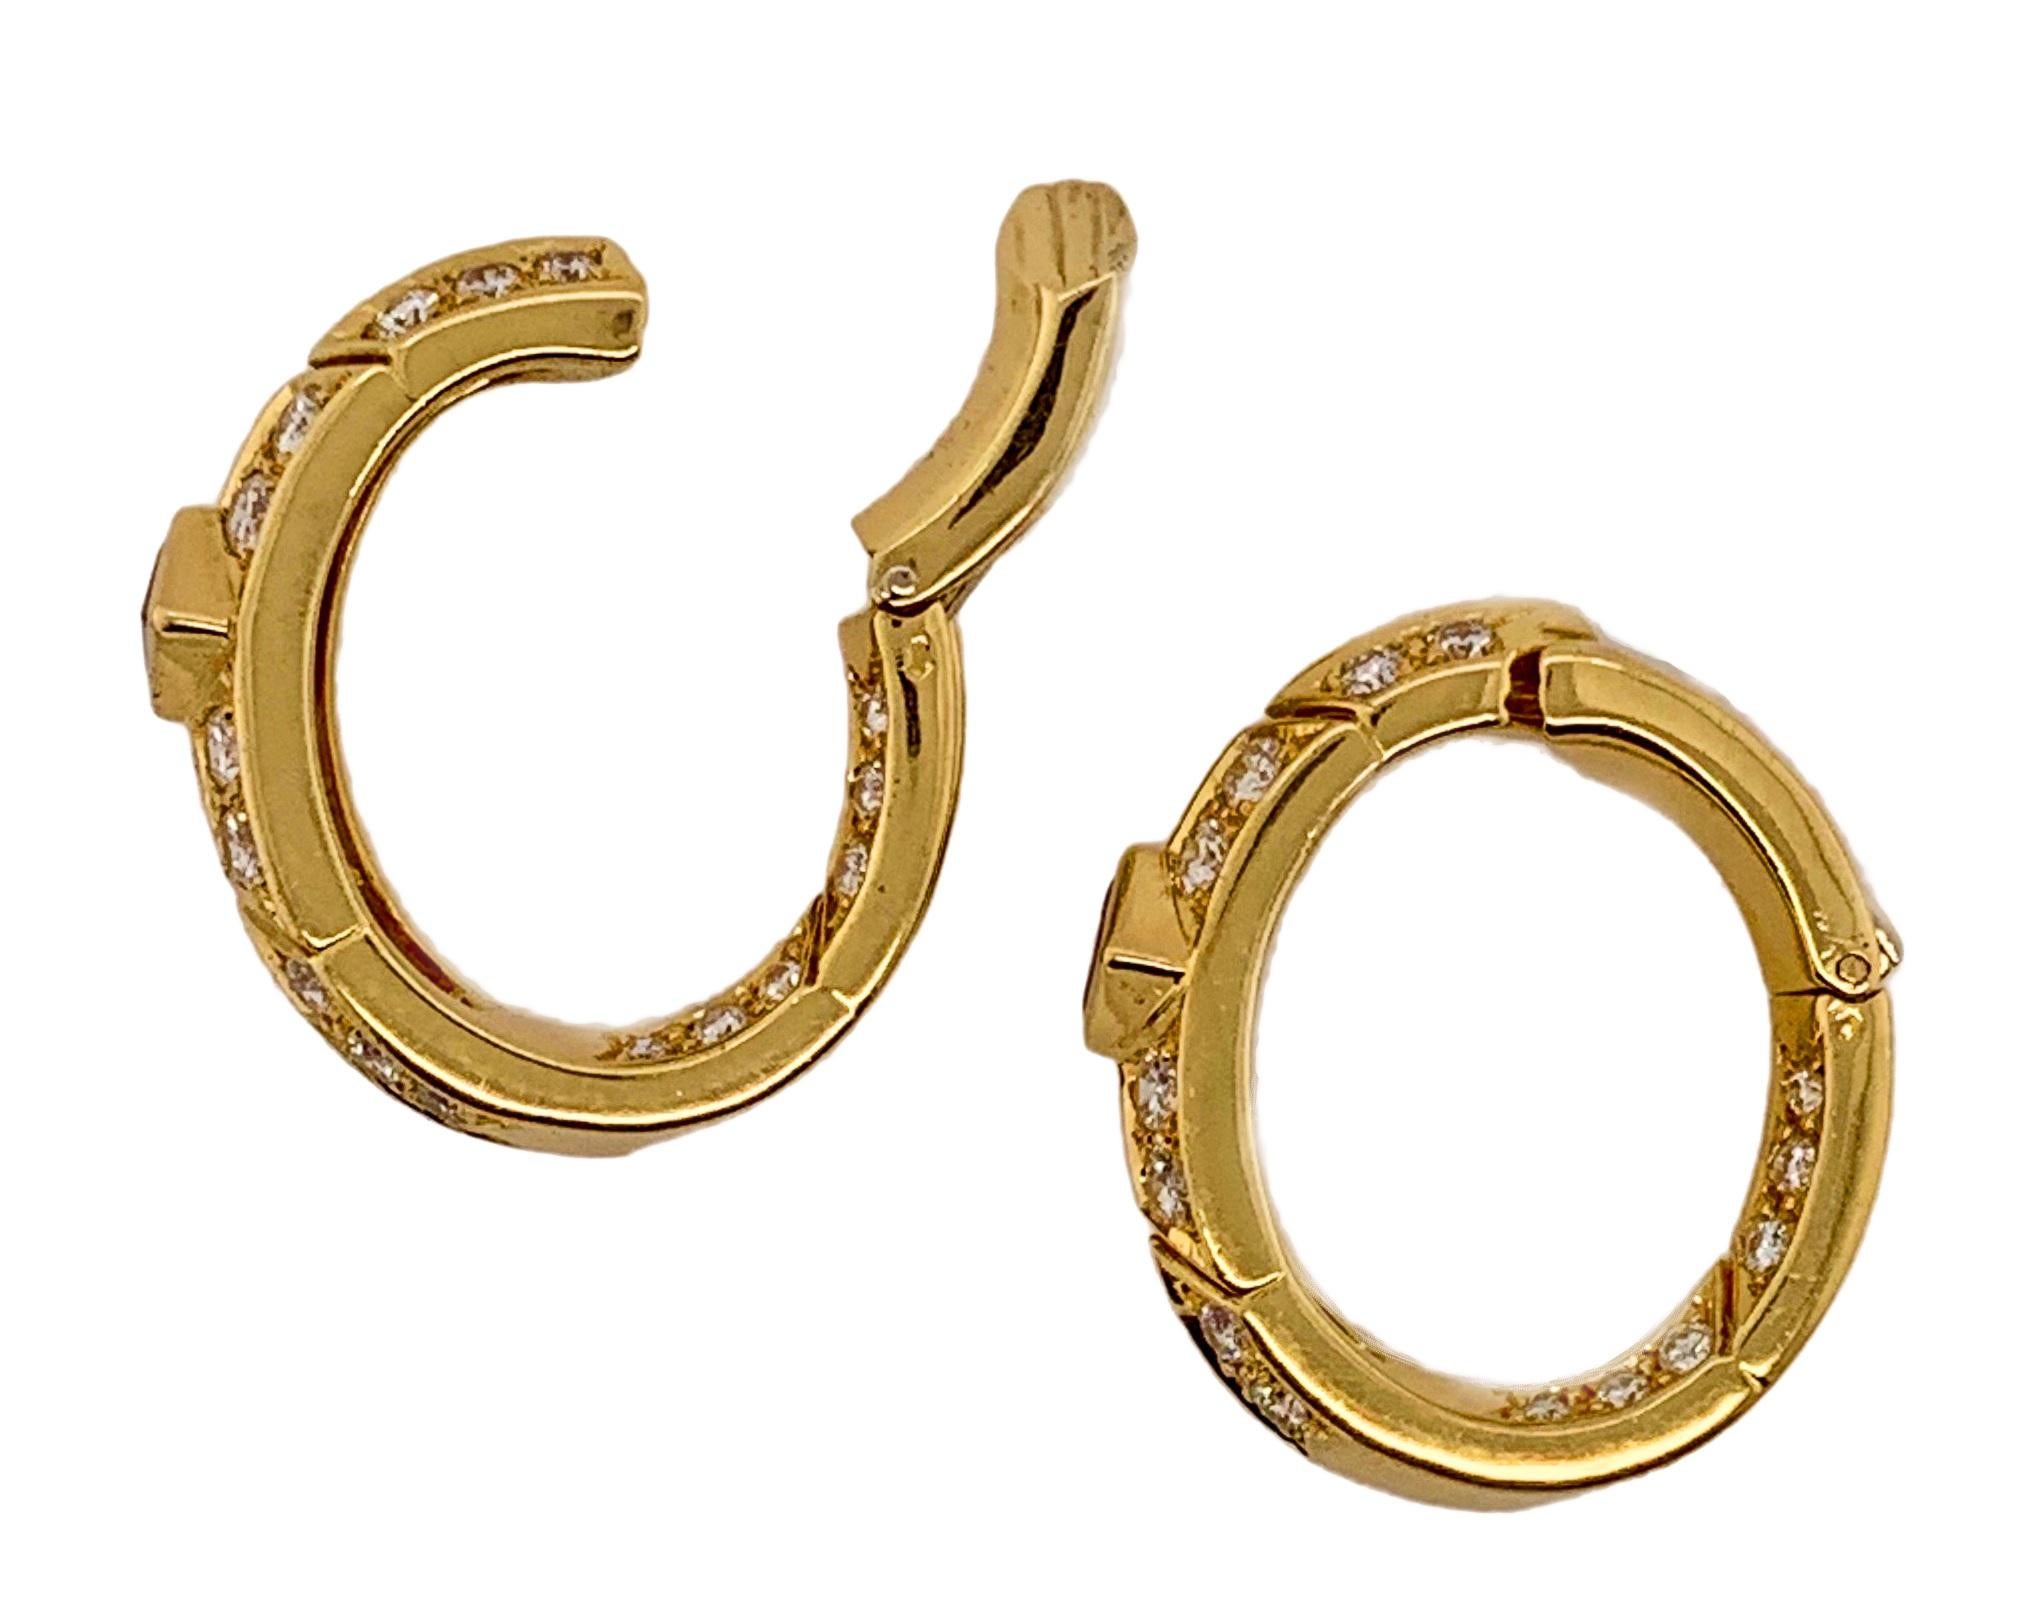 Gold, Ruby and Diamond Earrings by Van Cleef & Arpels 1